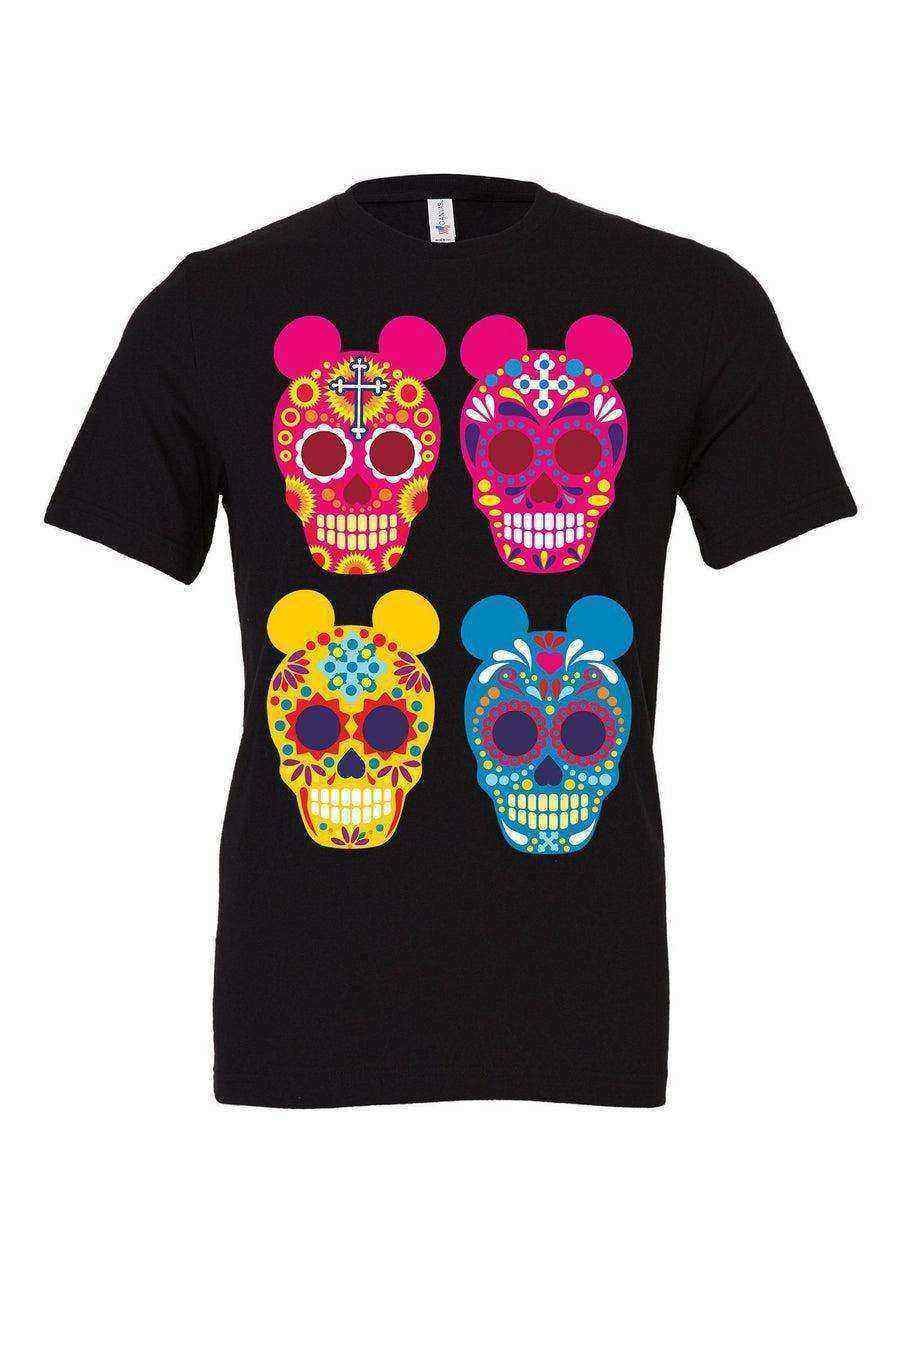 Youth | Sugar Skull Mickey Shirt | Coco Shirt - Dylan's Tees